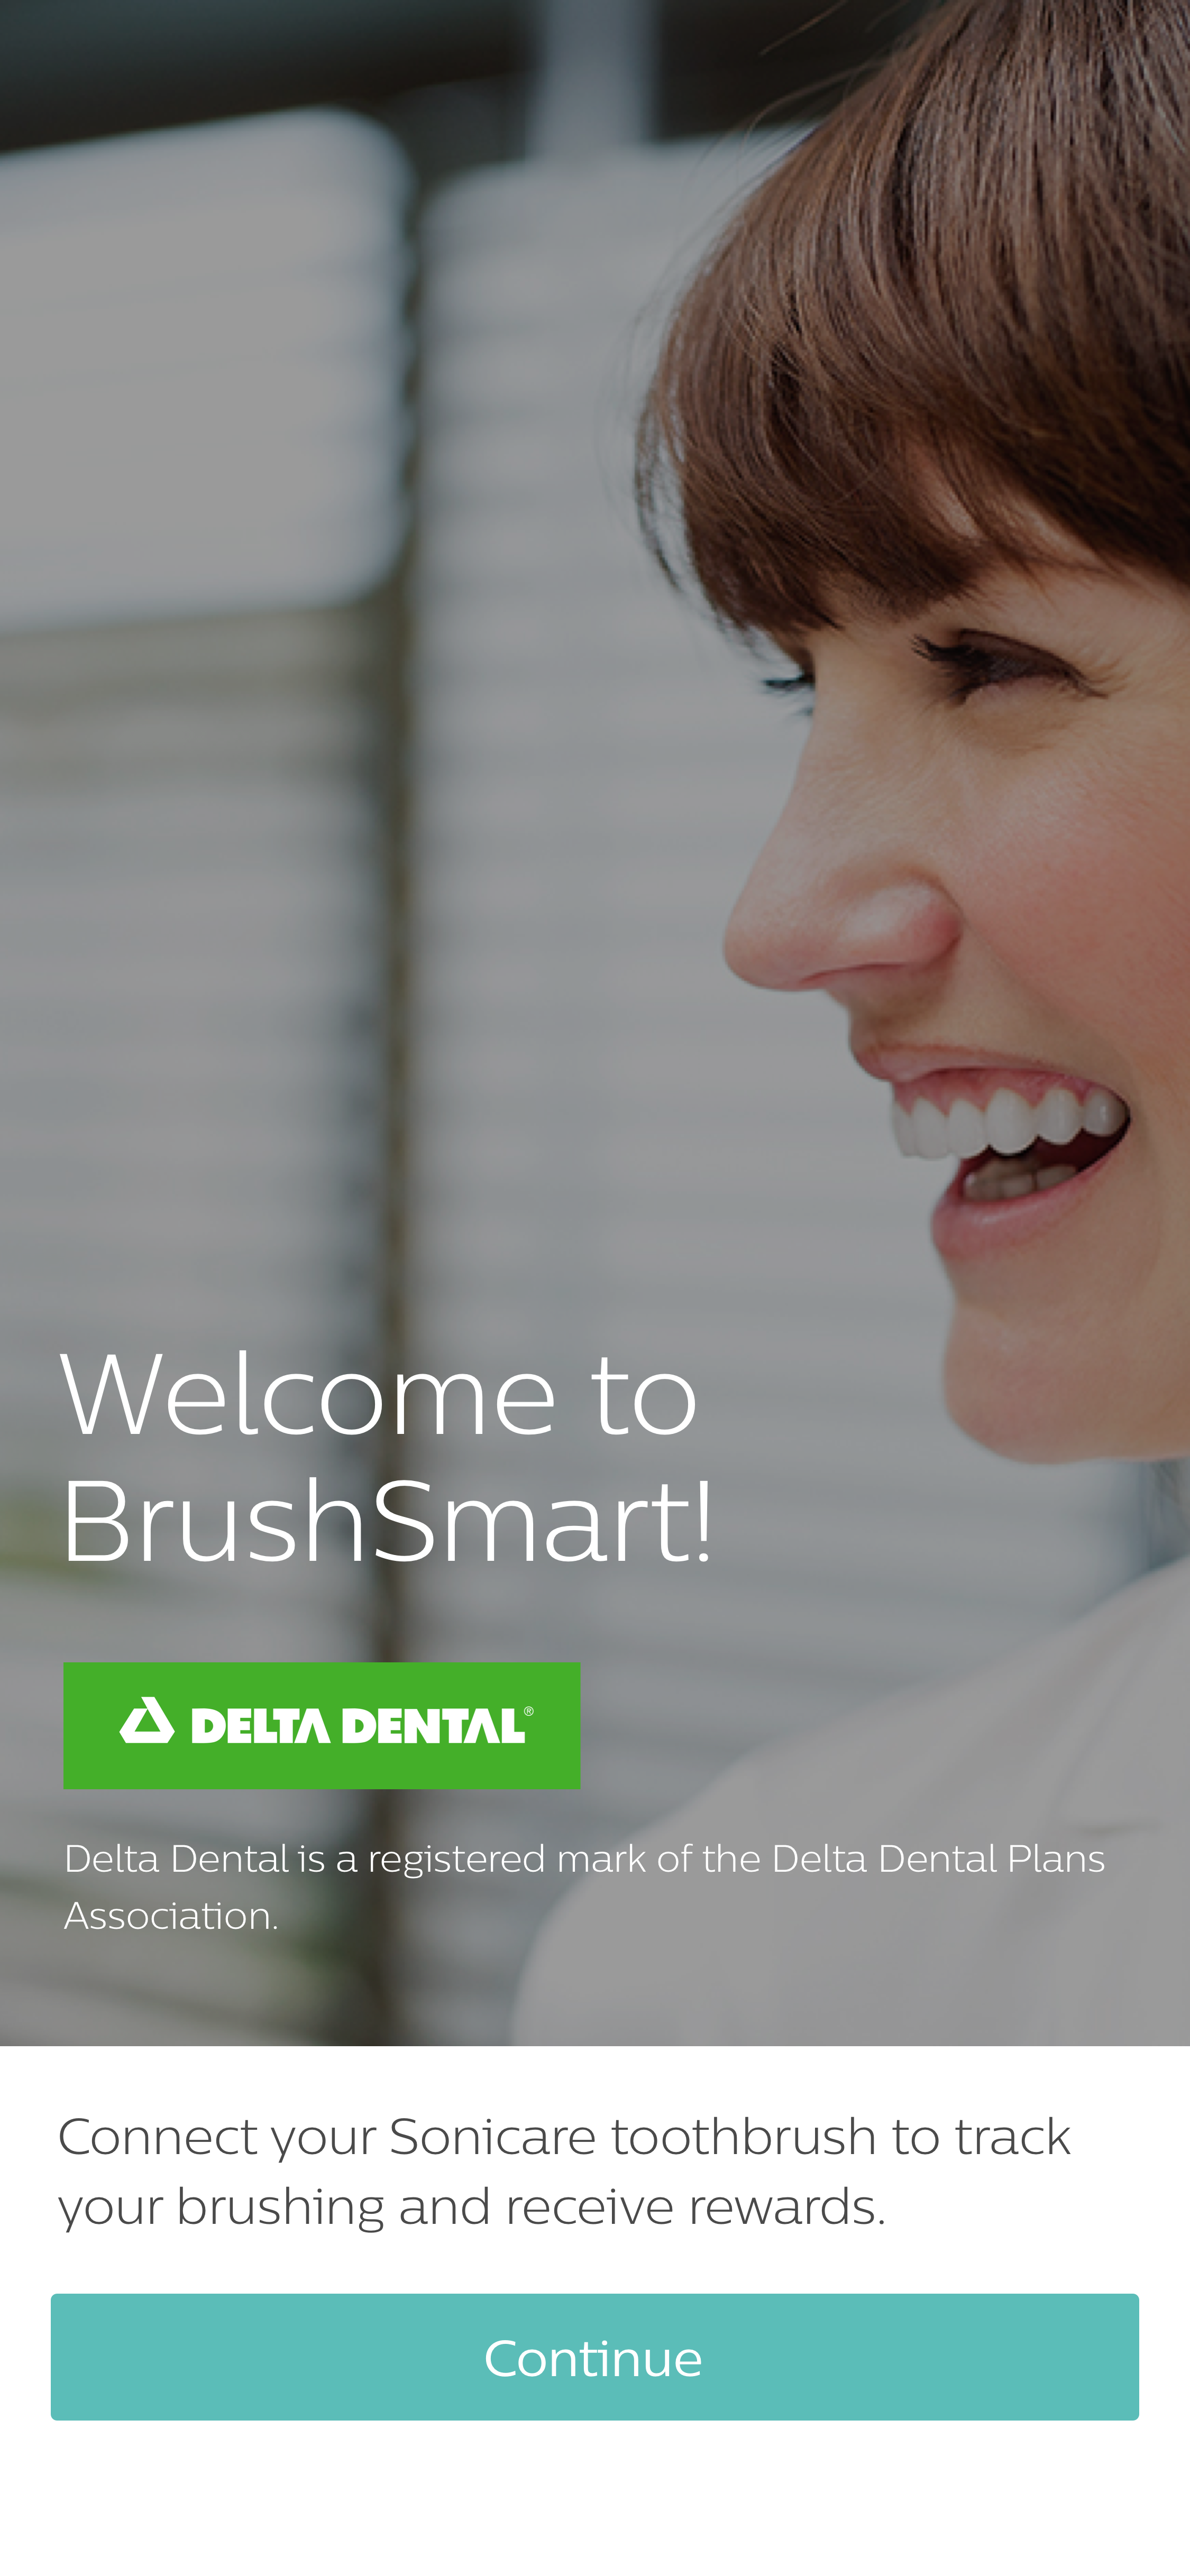 Philips and DeltaDental of California’s BrushSmart program